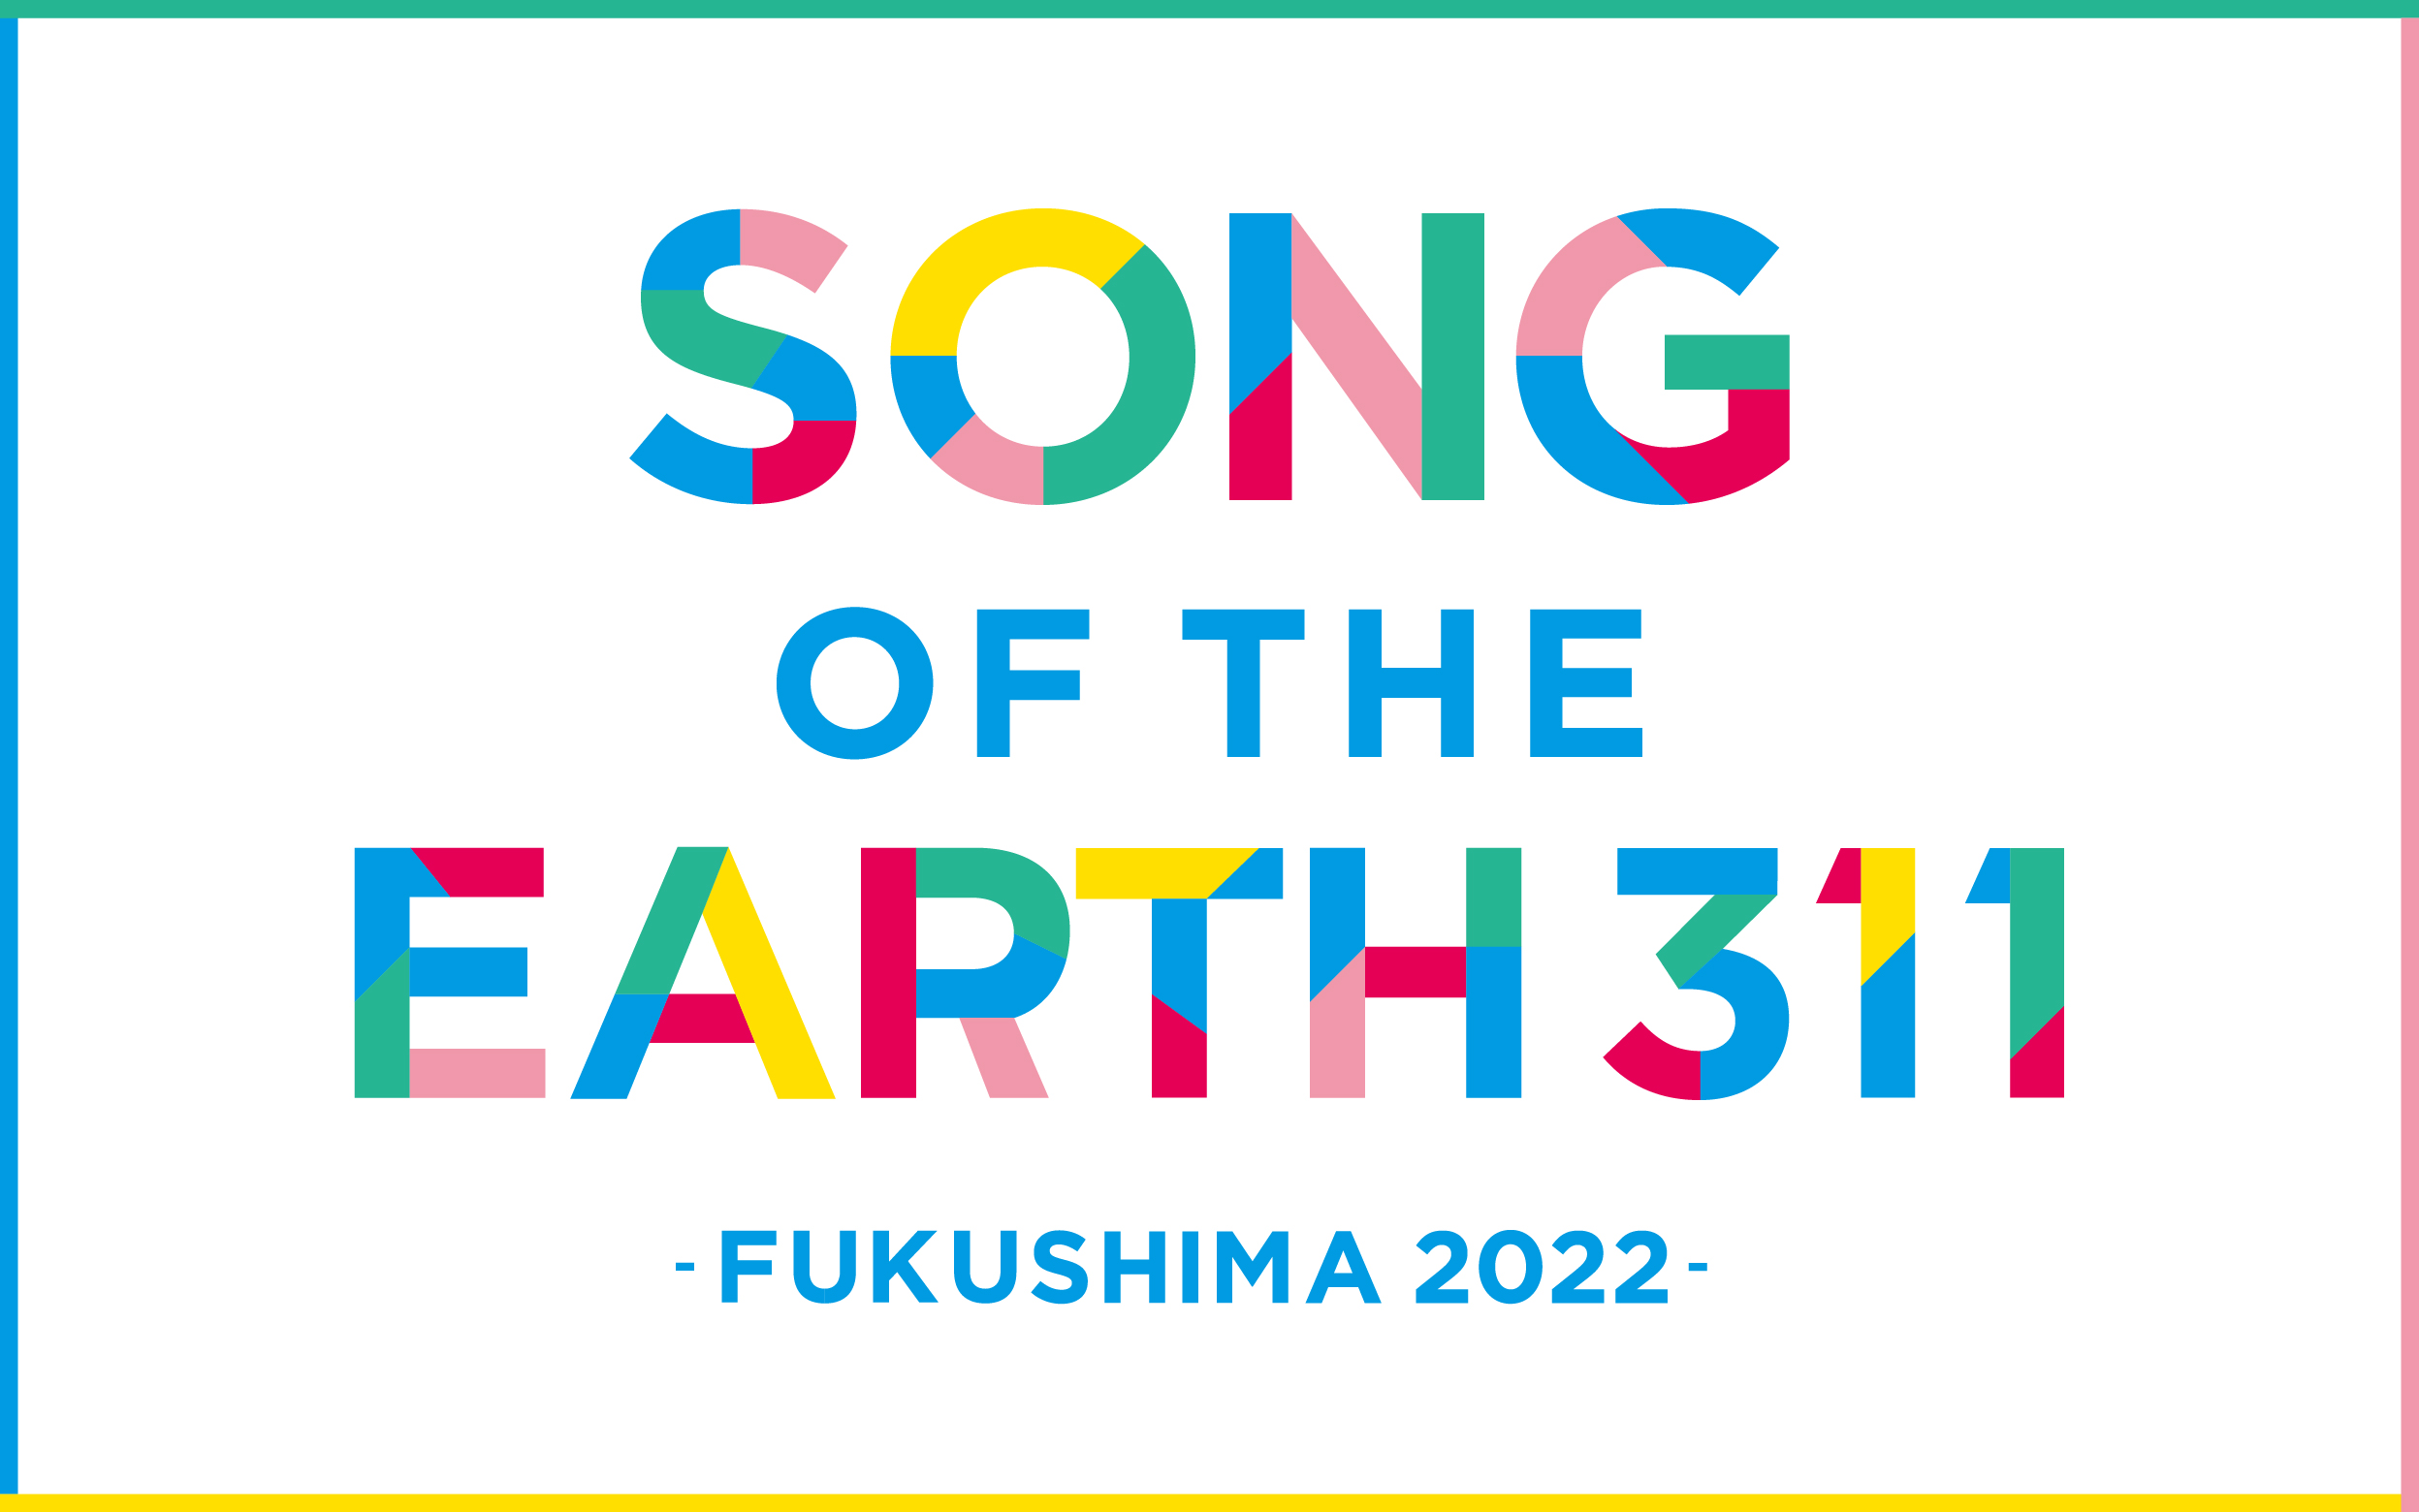 SONG OF THE EARTH311-FUKUSHIMA 2022-　シンポジウム・ふたば、ふたたびツアー情報公開！